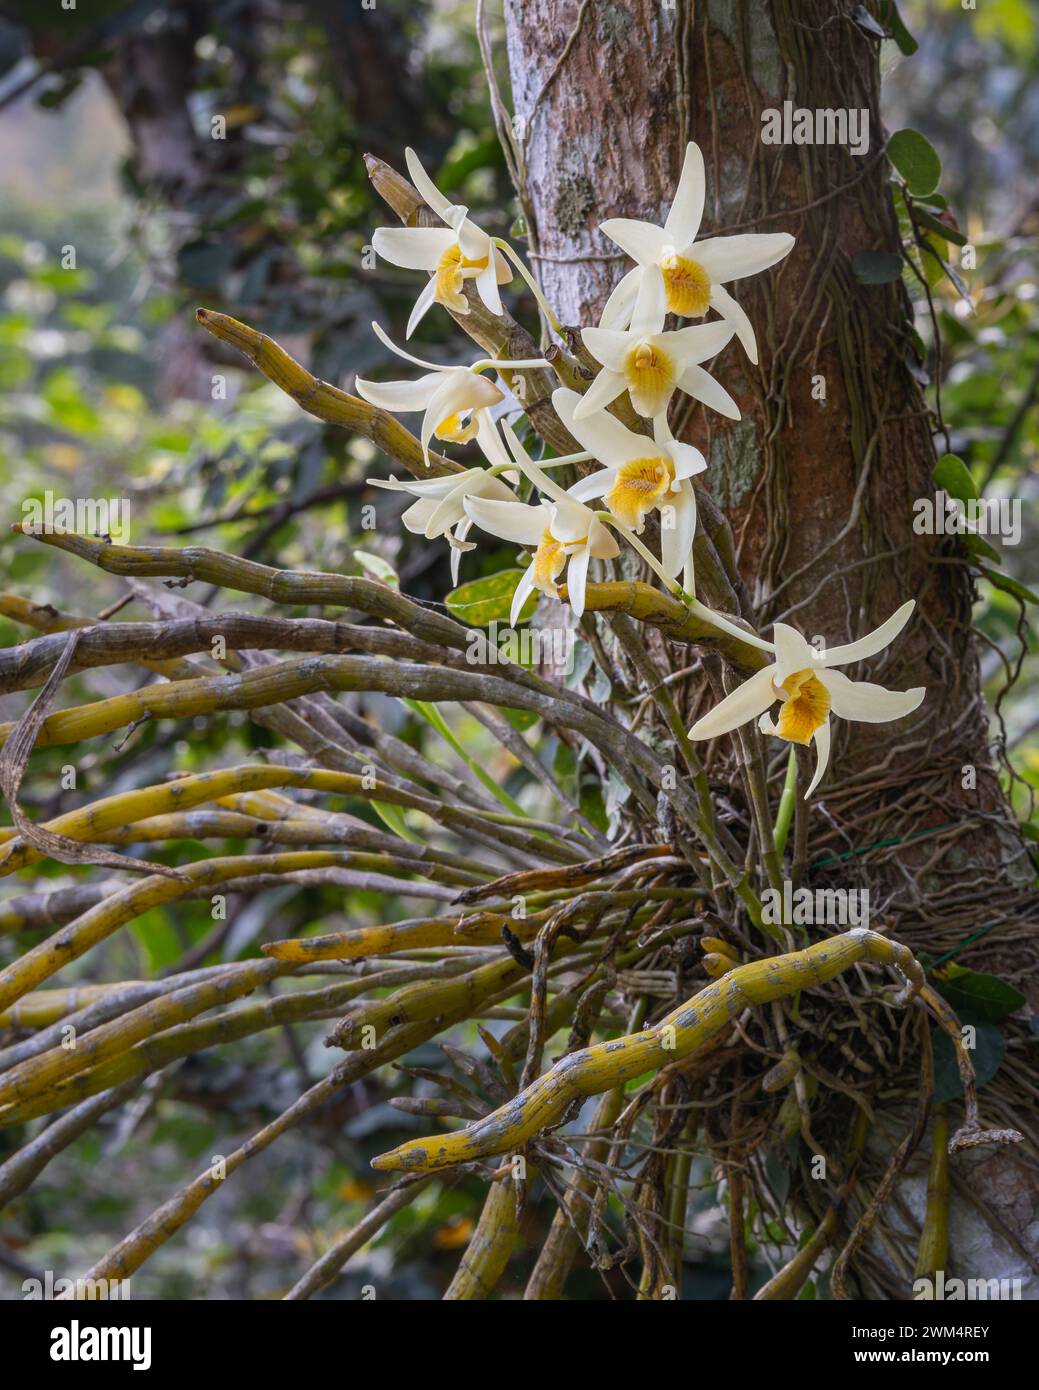 Vue rapprochée des fleurs blanc crème et jaune orangé de l'espèce épiphyte d'orchidée dendrobium heterocarpum fleurissant à l'extérieur sur fond naturel Banque D'Images